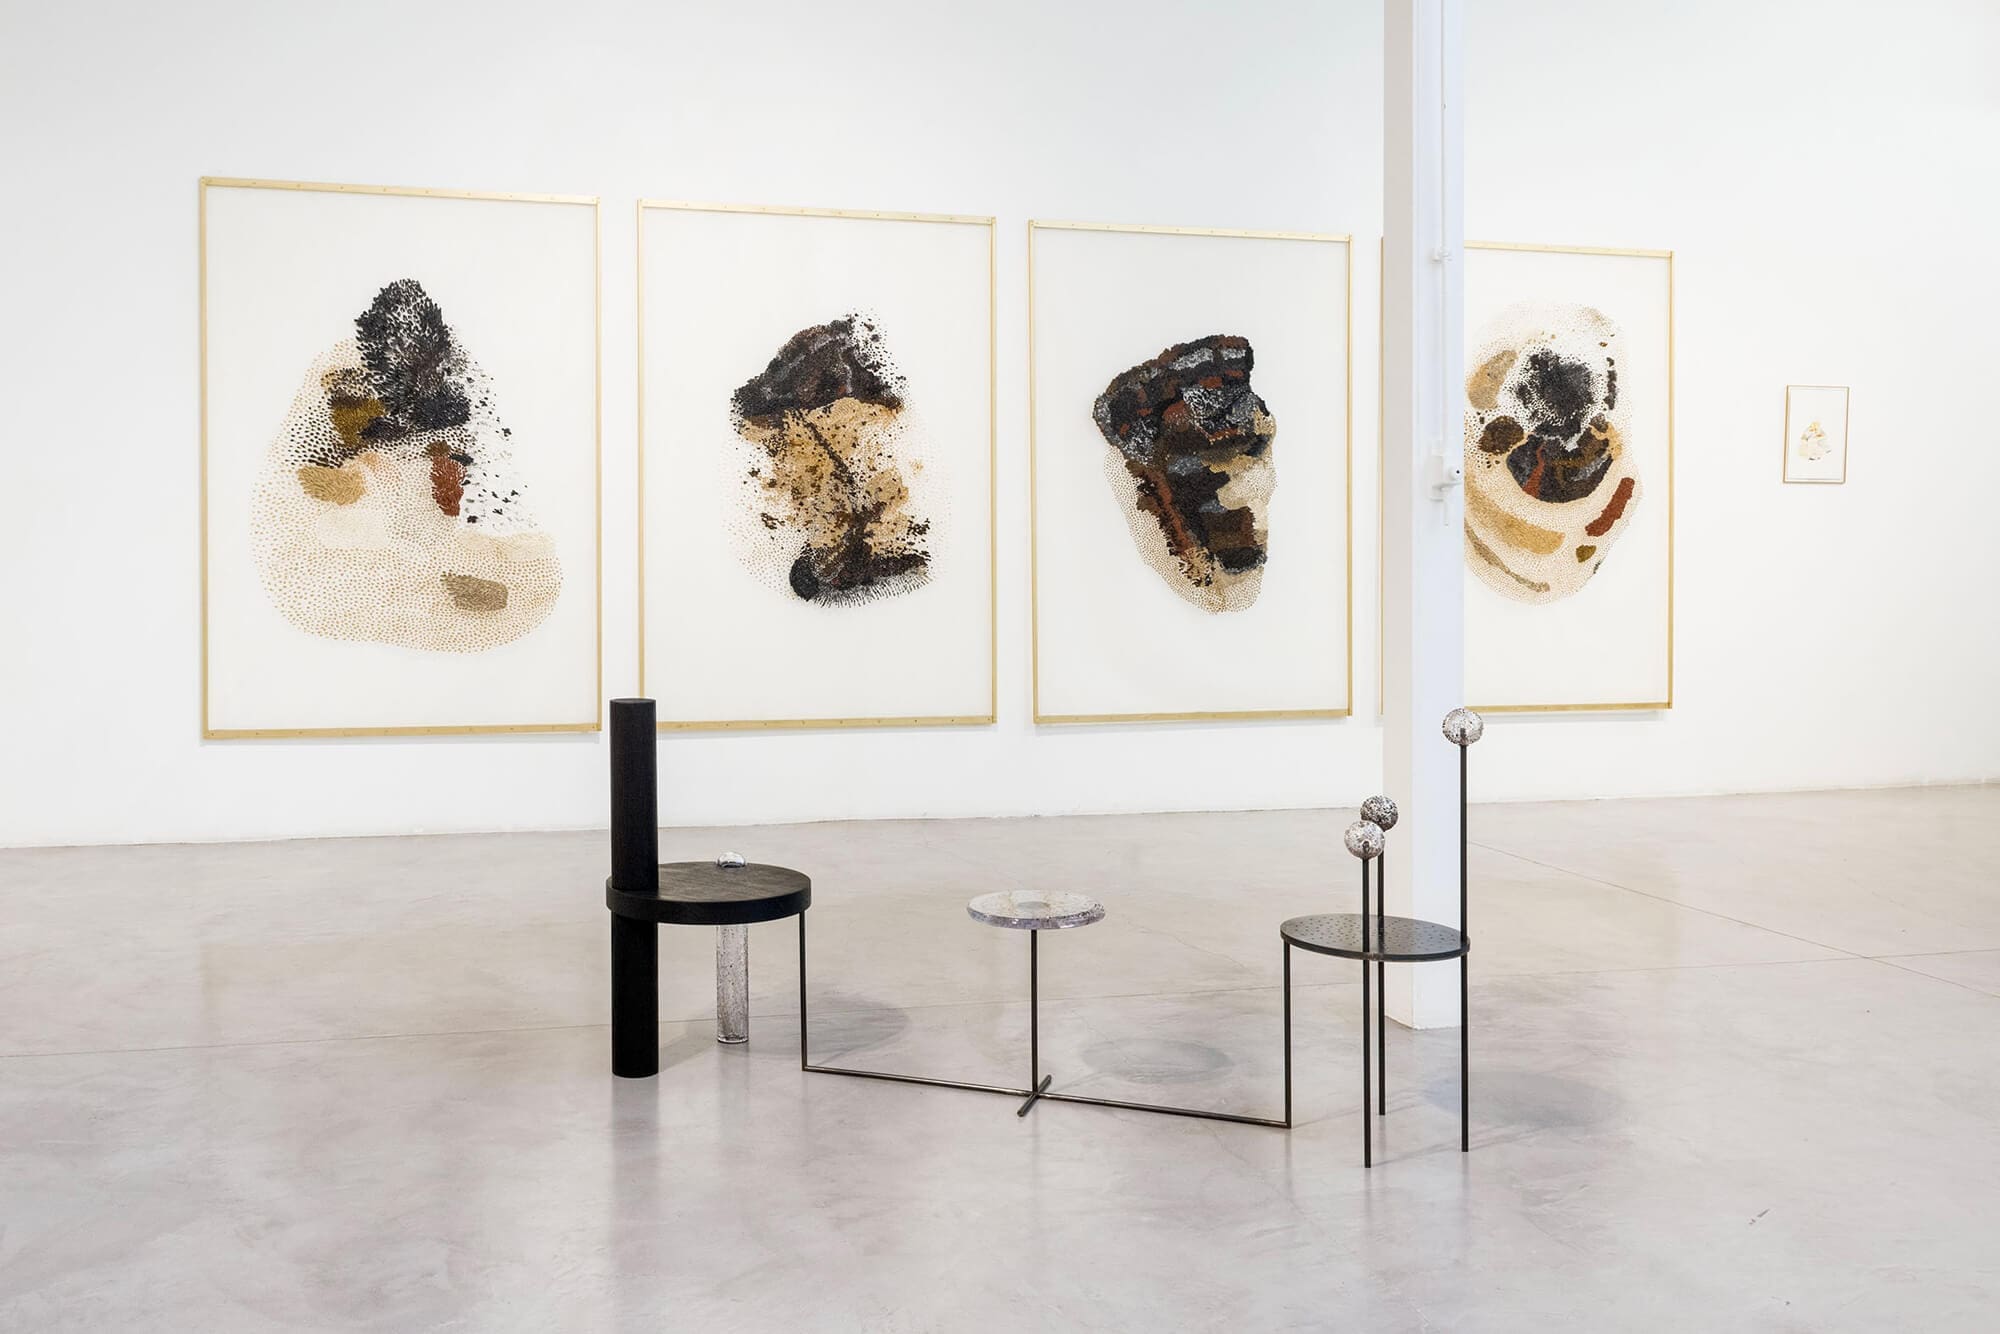 Série des 4 gazes peintes dans l'exposition de Daniela Busarello à la Galerie Mouvements Modernes.